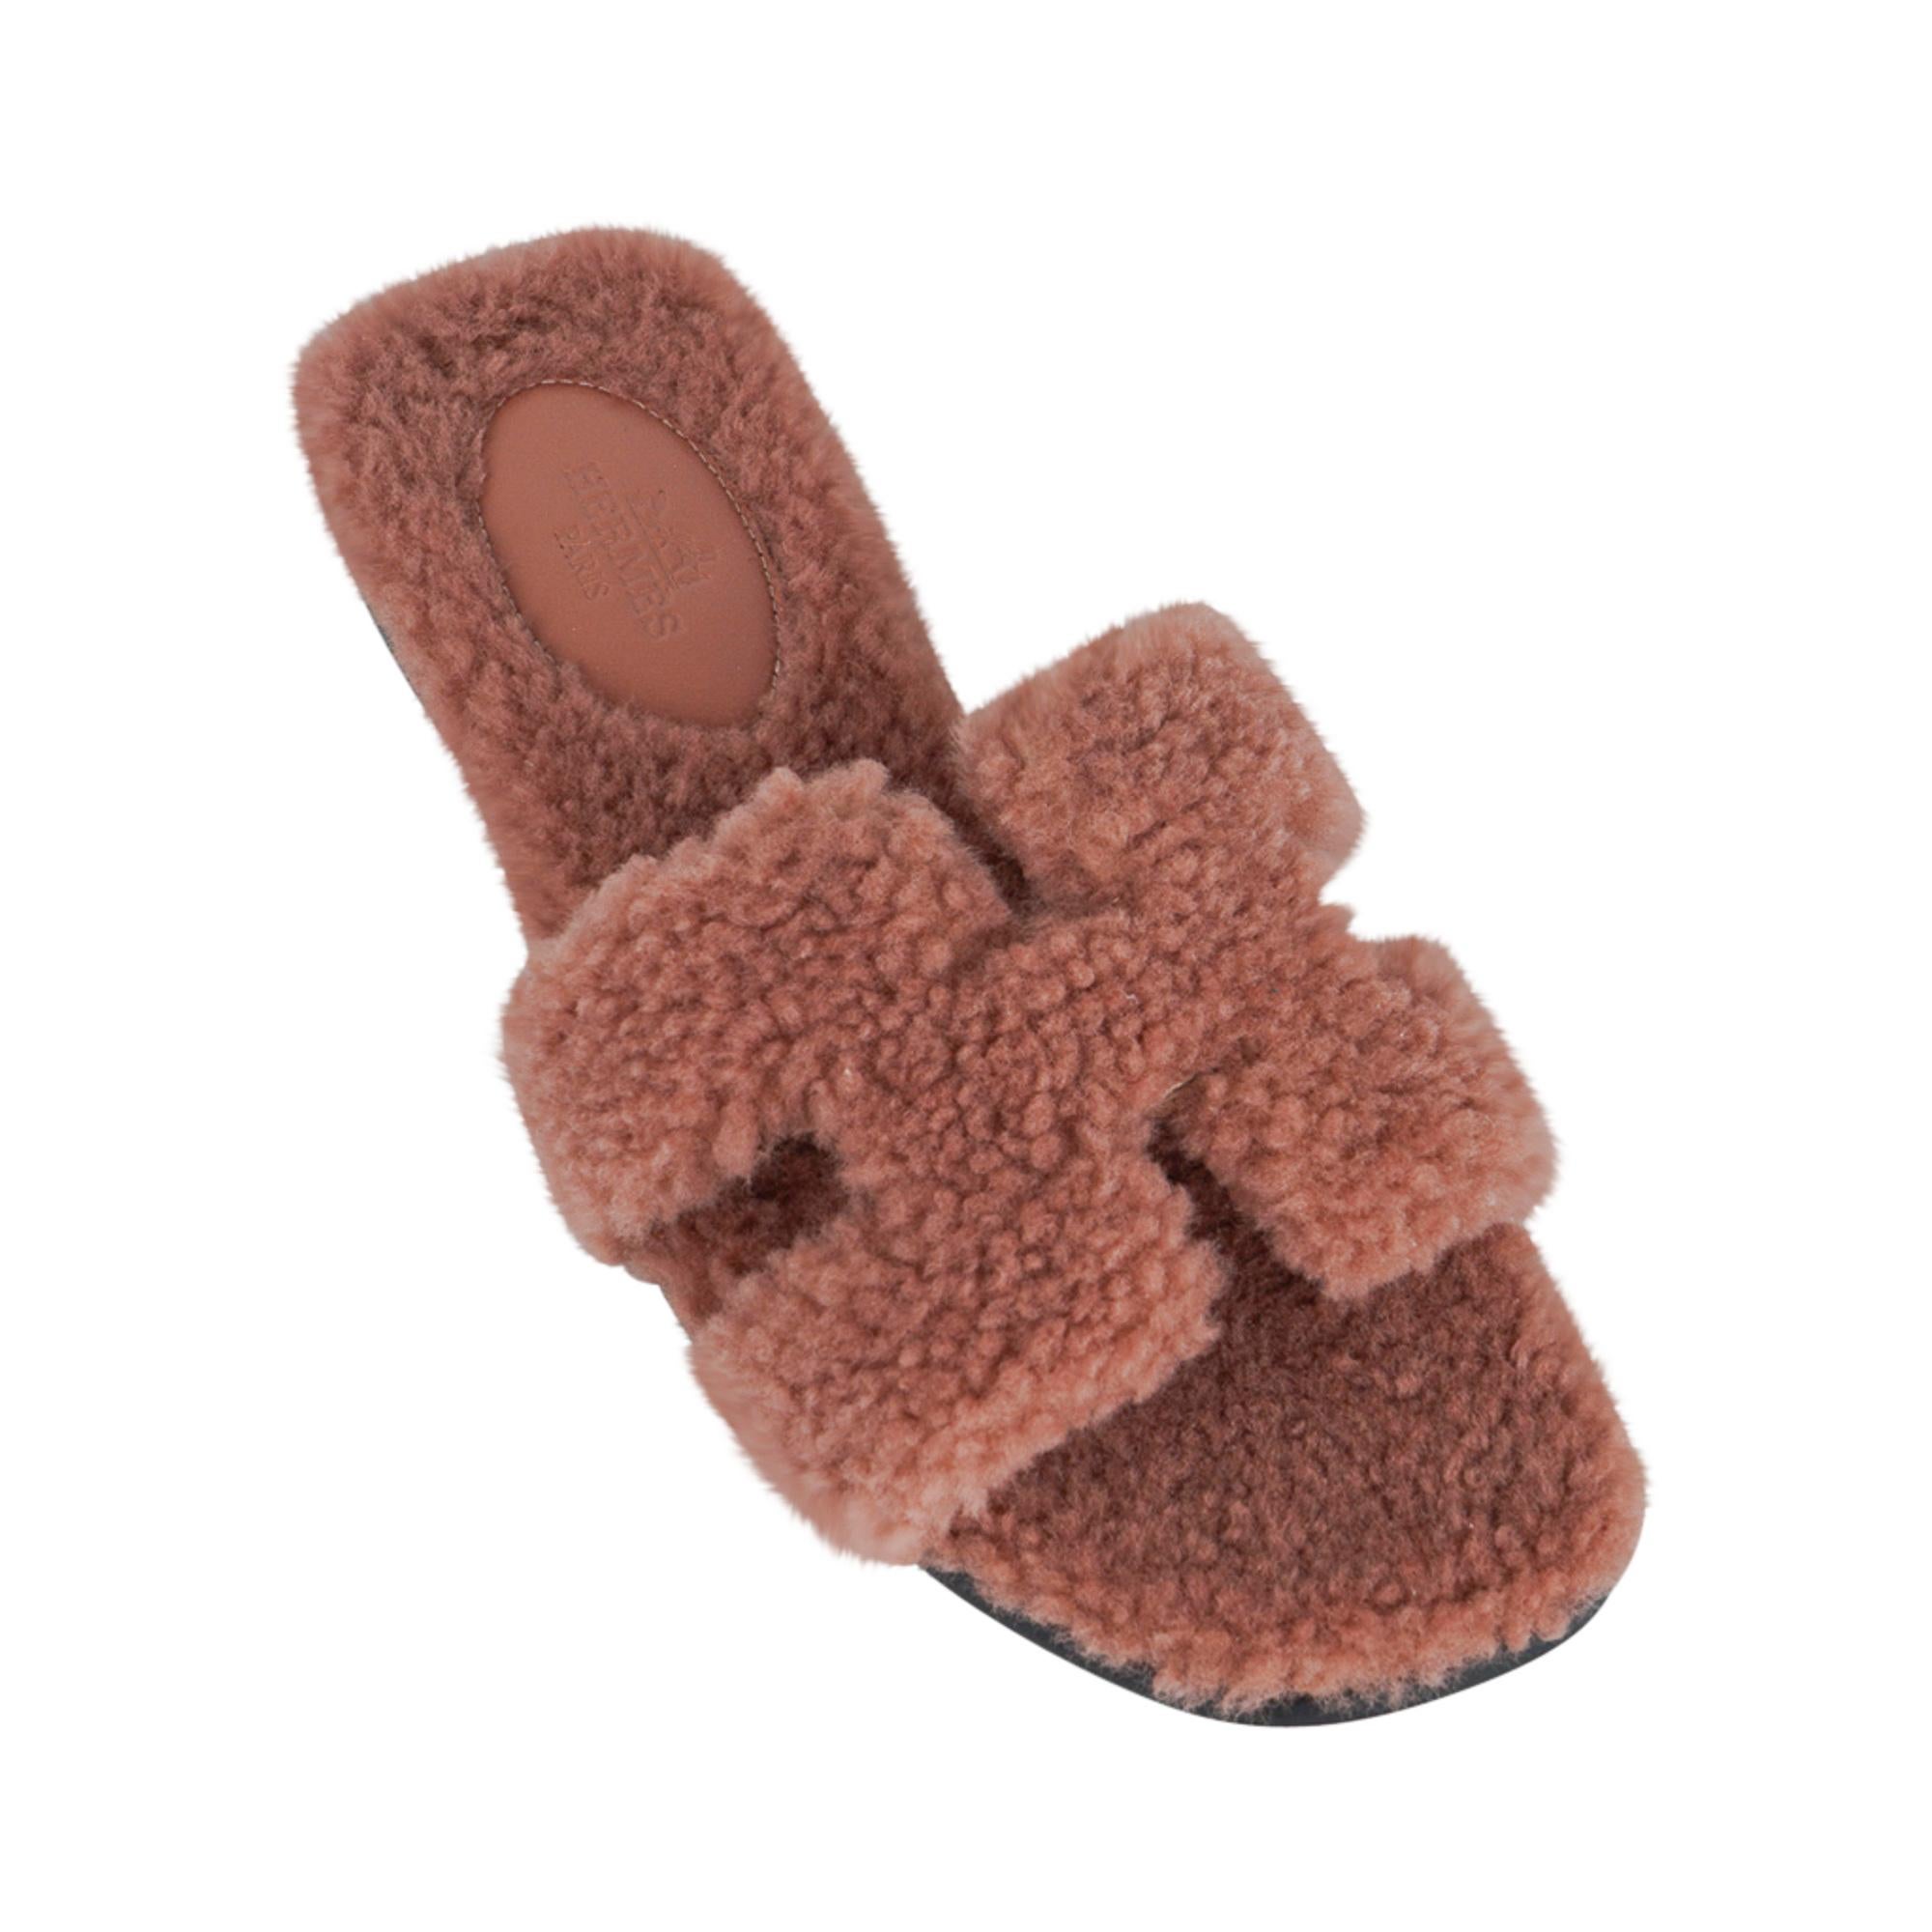 Mightychic bietet eine garantiert authentische Hermes Oran Teddy Bear Rose Aube limitierte Auflage flache Slide-Sandale.
Extrem seltene Größe in sanftem, neutralem, gedämpftem Rosa - diese Hermes Oran-Sandale ist die Perfektion des